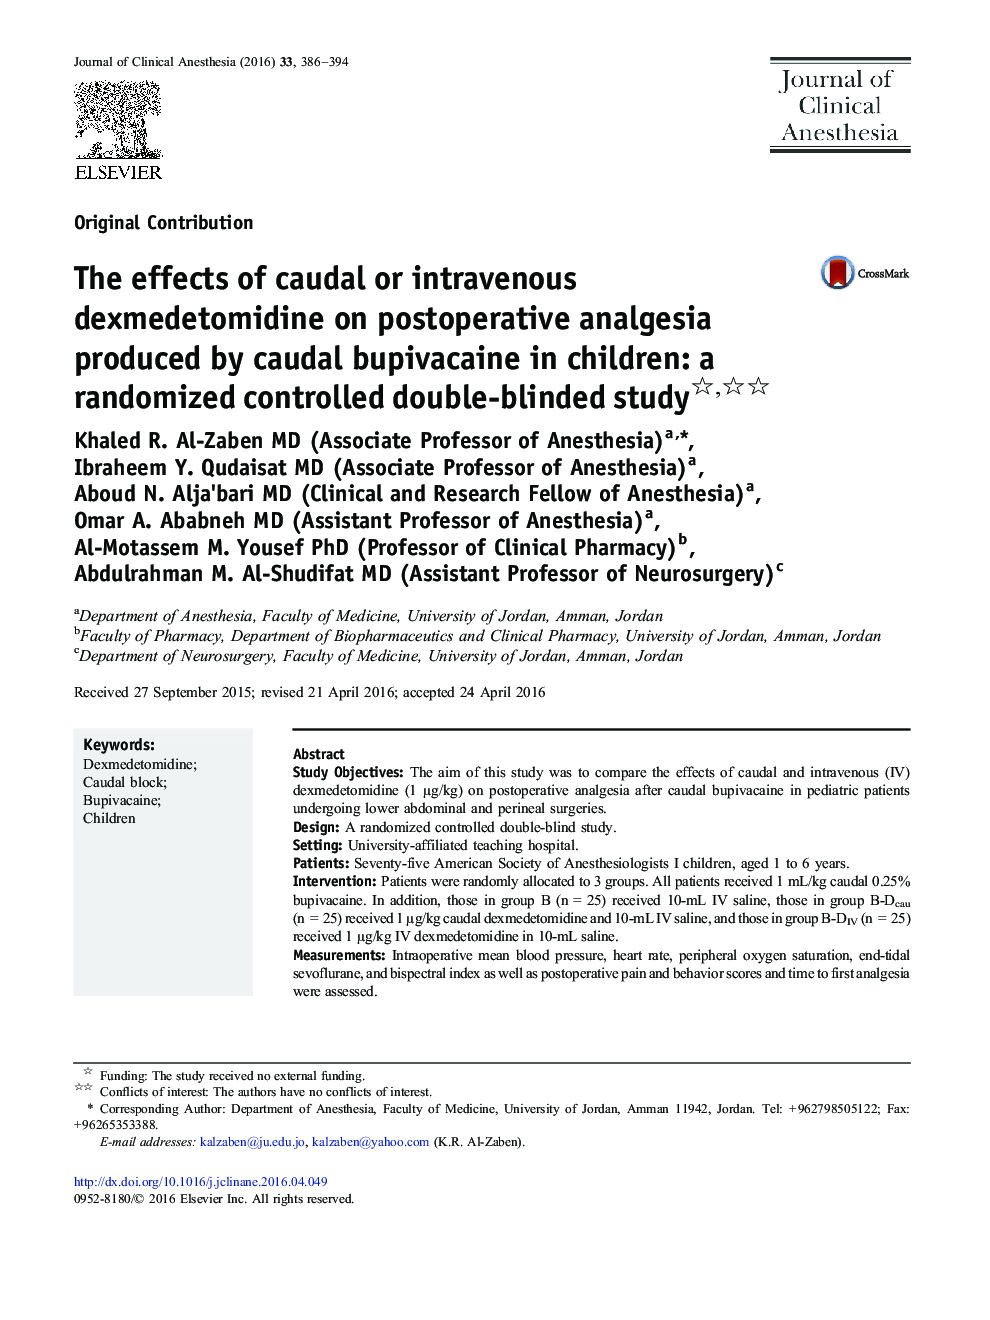 اثرات دگزامتومیدین کادو یا وریدی بر درد زایمان پس از عمل بوپیفاواکائین کادال در کودکان: یک مطالعه تصادفی دو سوکور 